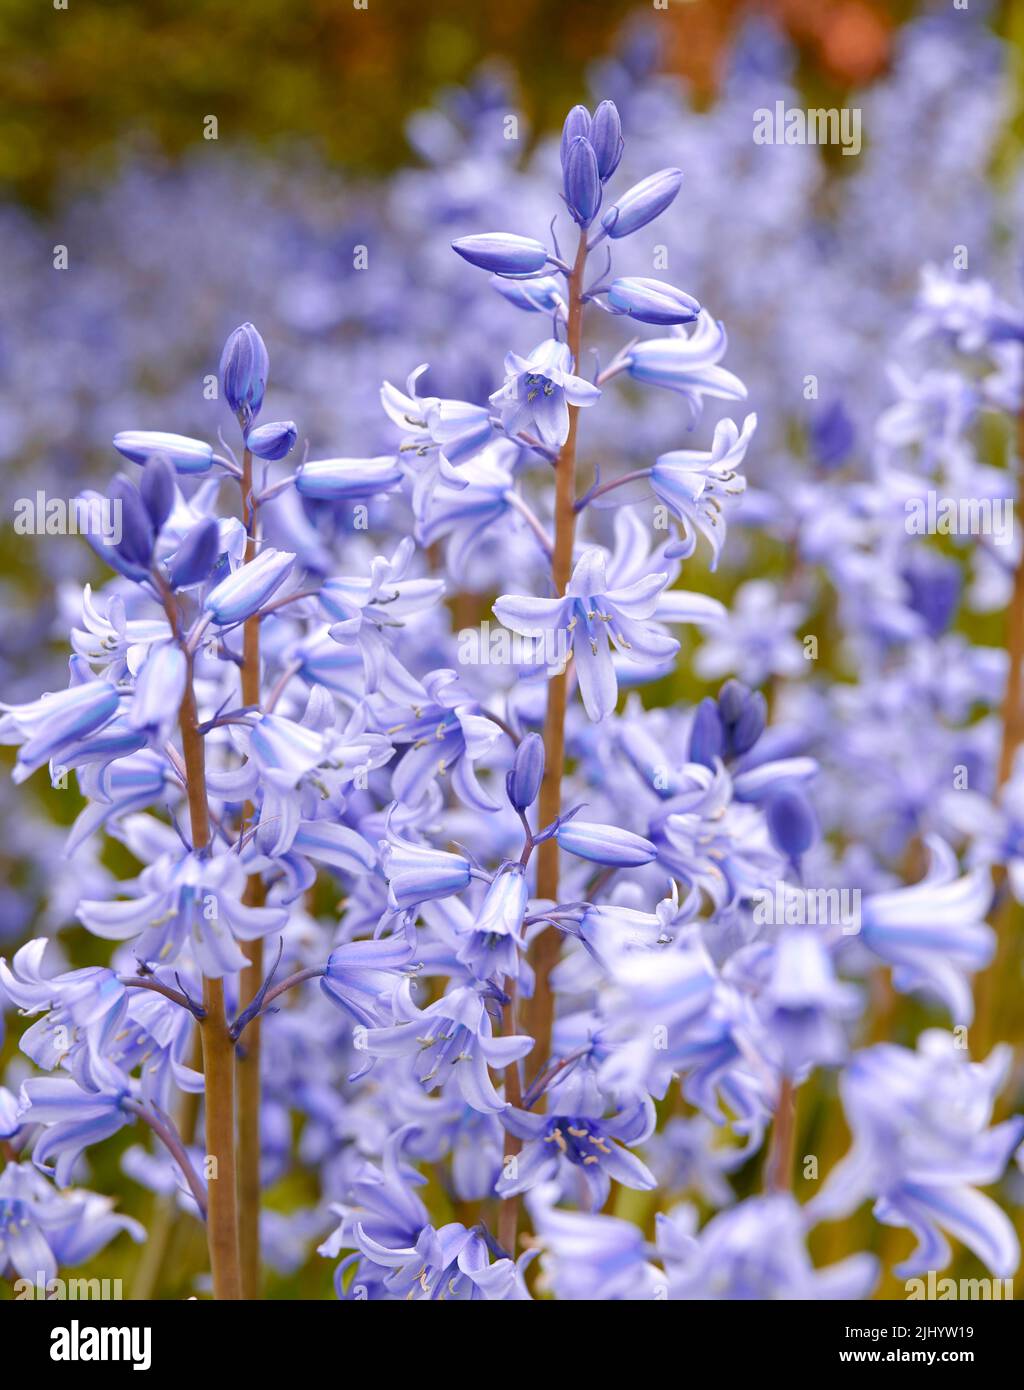 Spanische Bluebellblumen, eine Art von Hyacinthoides, blühen und blühen auf einem Feld oder einem botanischen Garten draußen. Wild blühende Pflanzen gedeihen Stockfoto